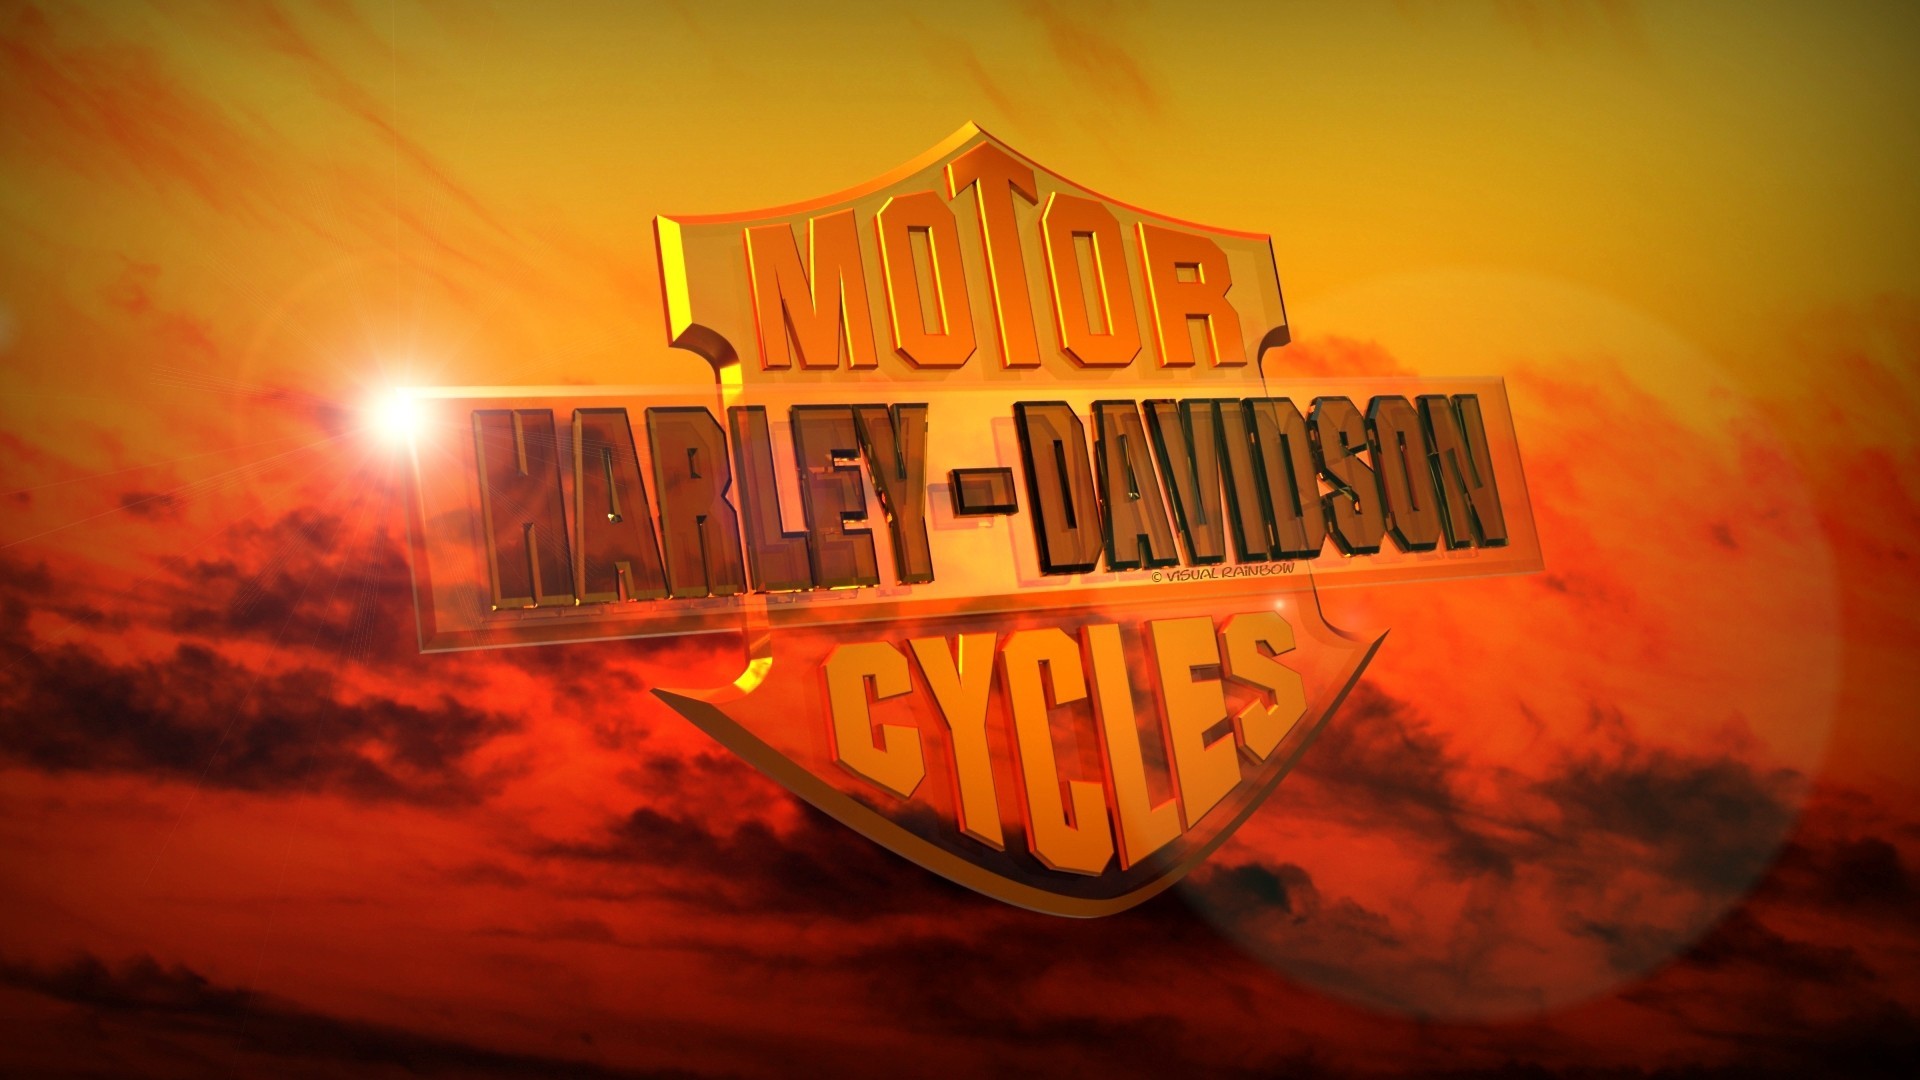  Harley Davidson Wallpaper for iPhone WallpaperSafari